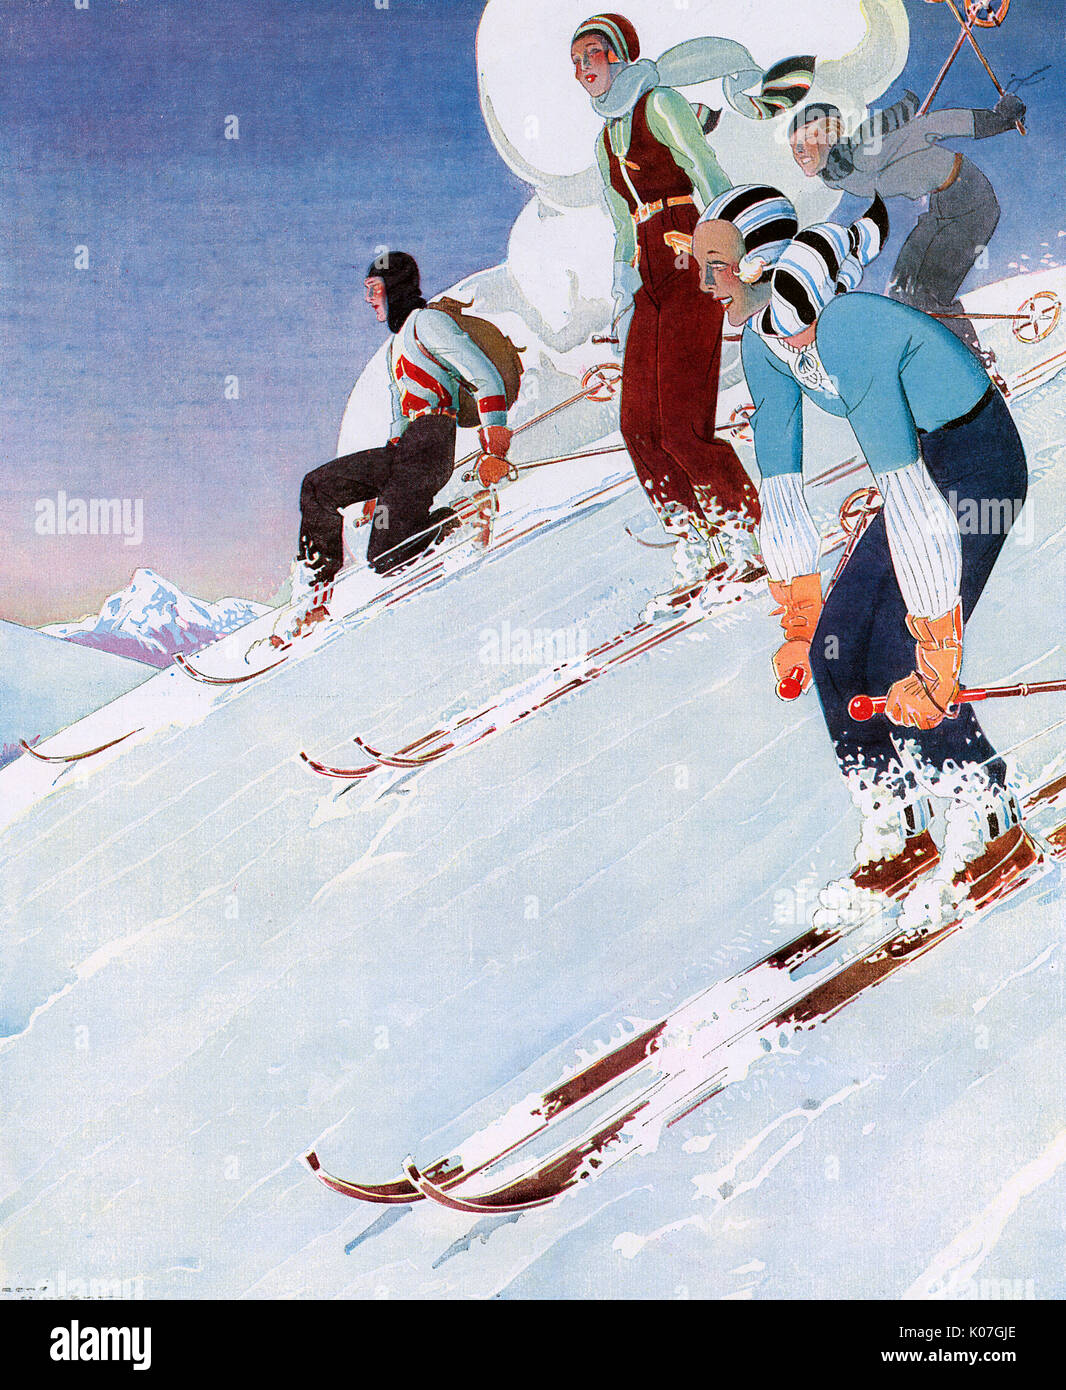 Un quartetto di colorfully vestita sciatori gara in discesa. Data: 1931 Foto Stock